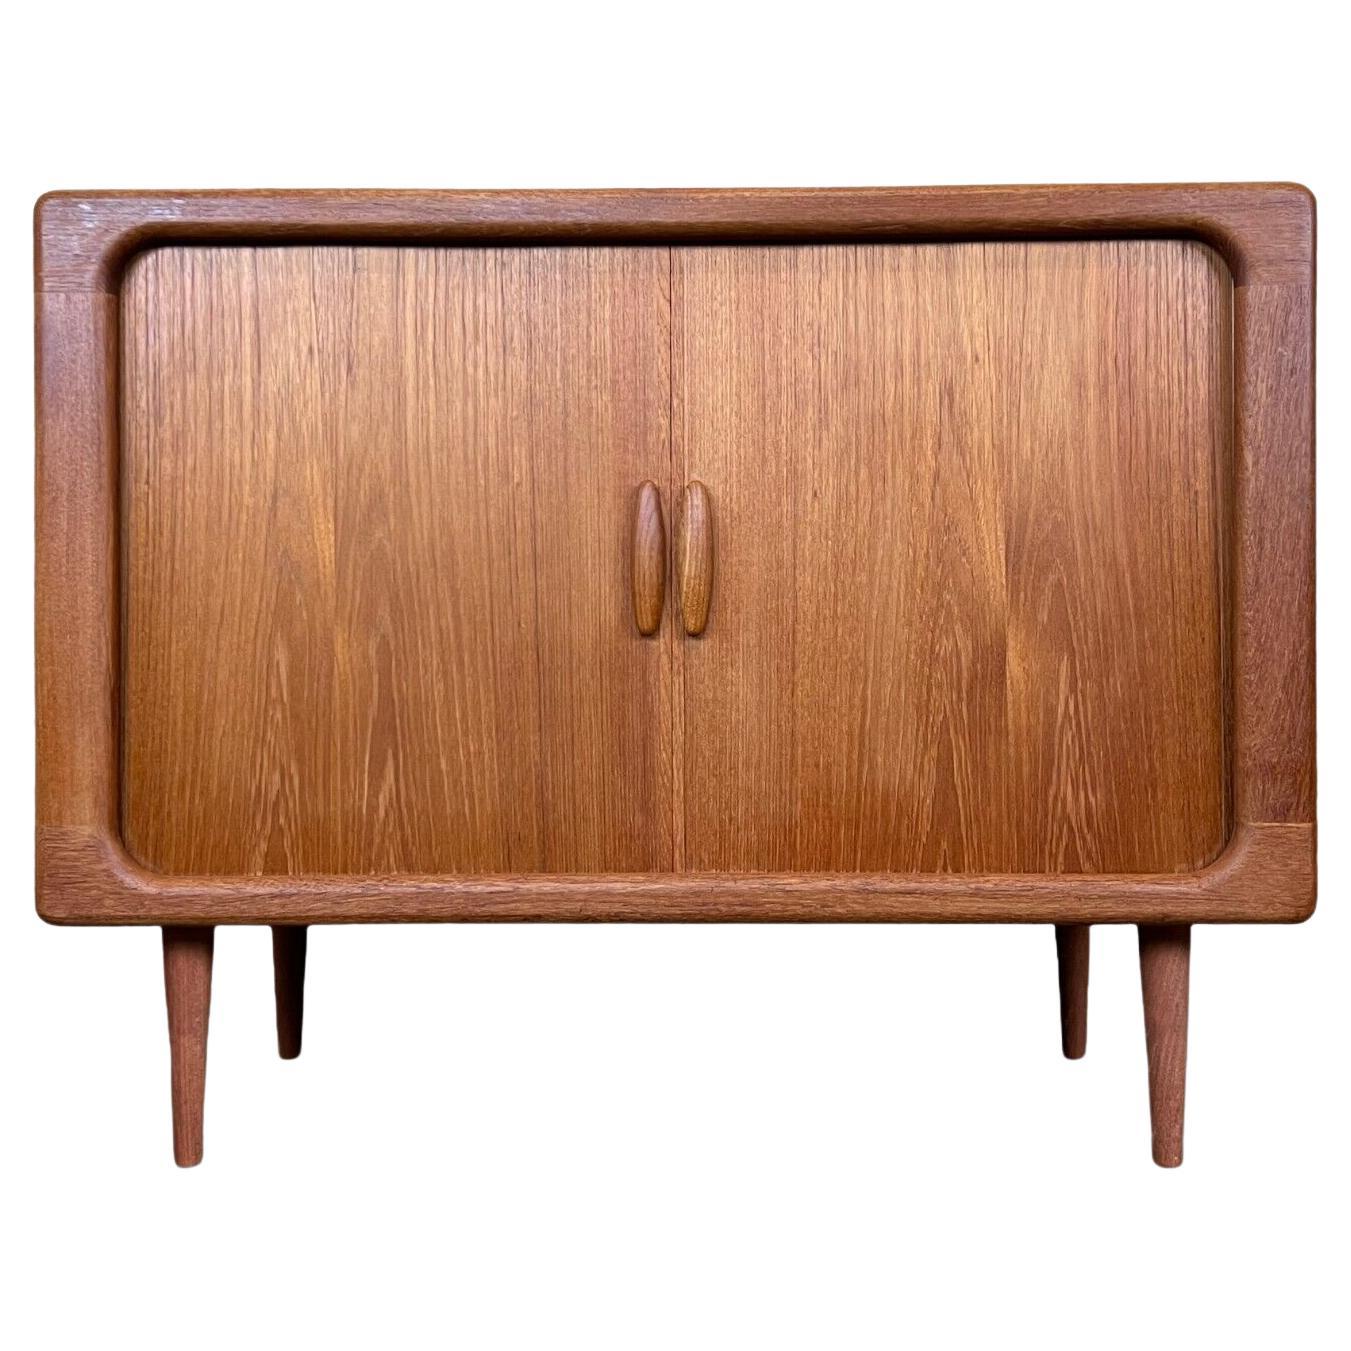 1960s-1970s Teak Dyrlund Sideboard Credenza Cabinet Danish Modern Design